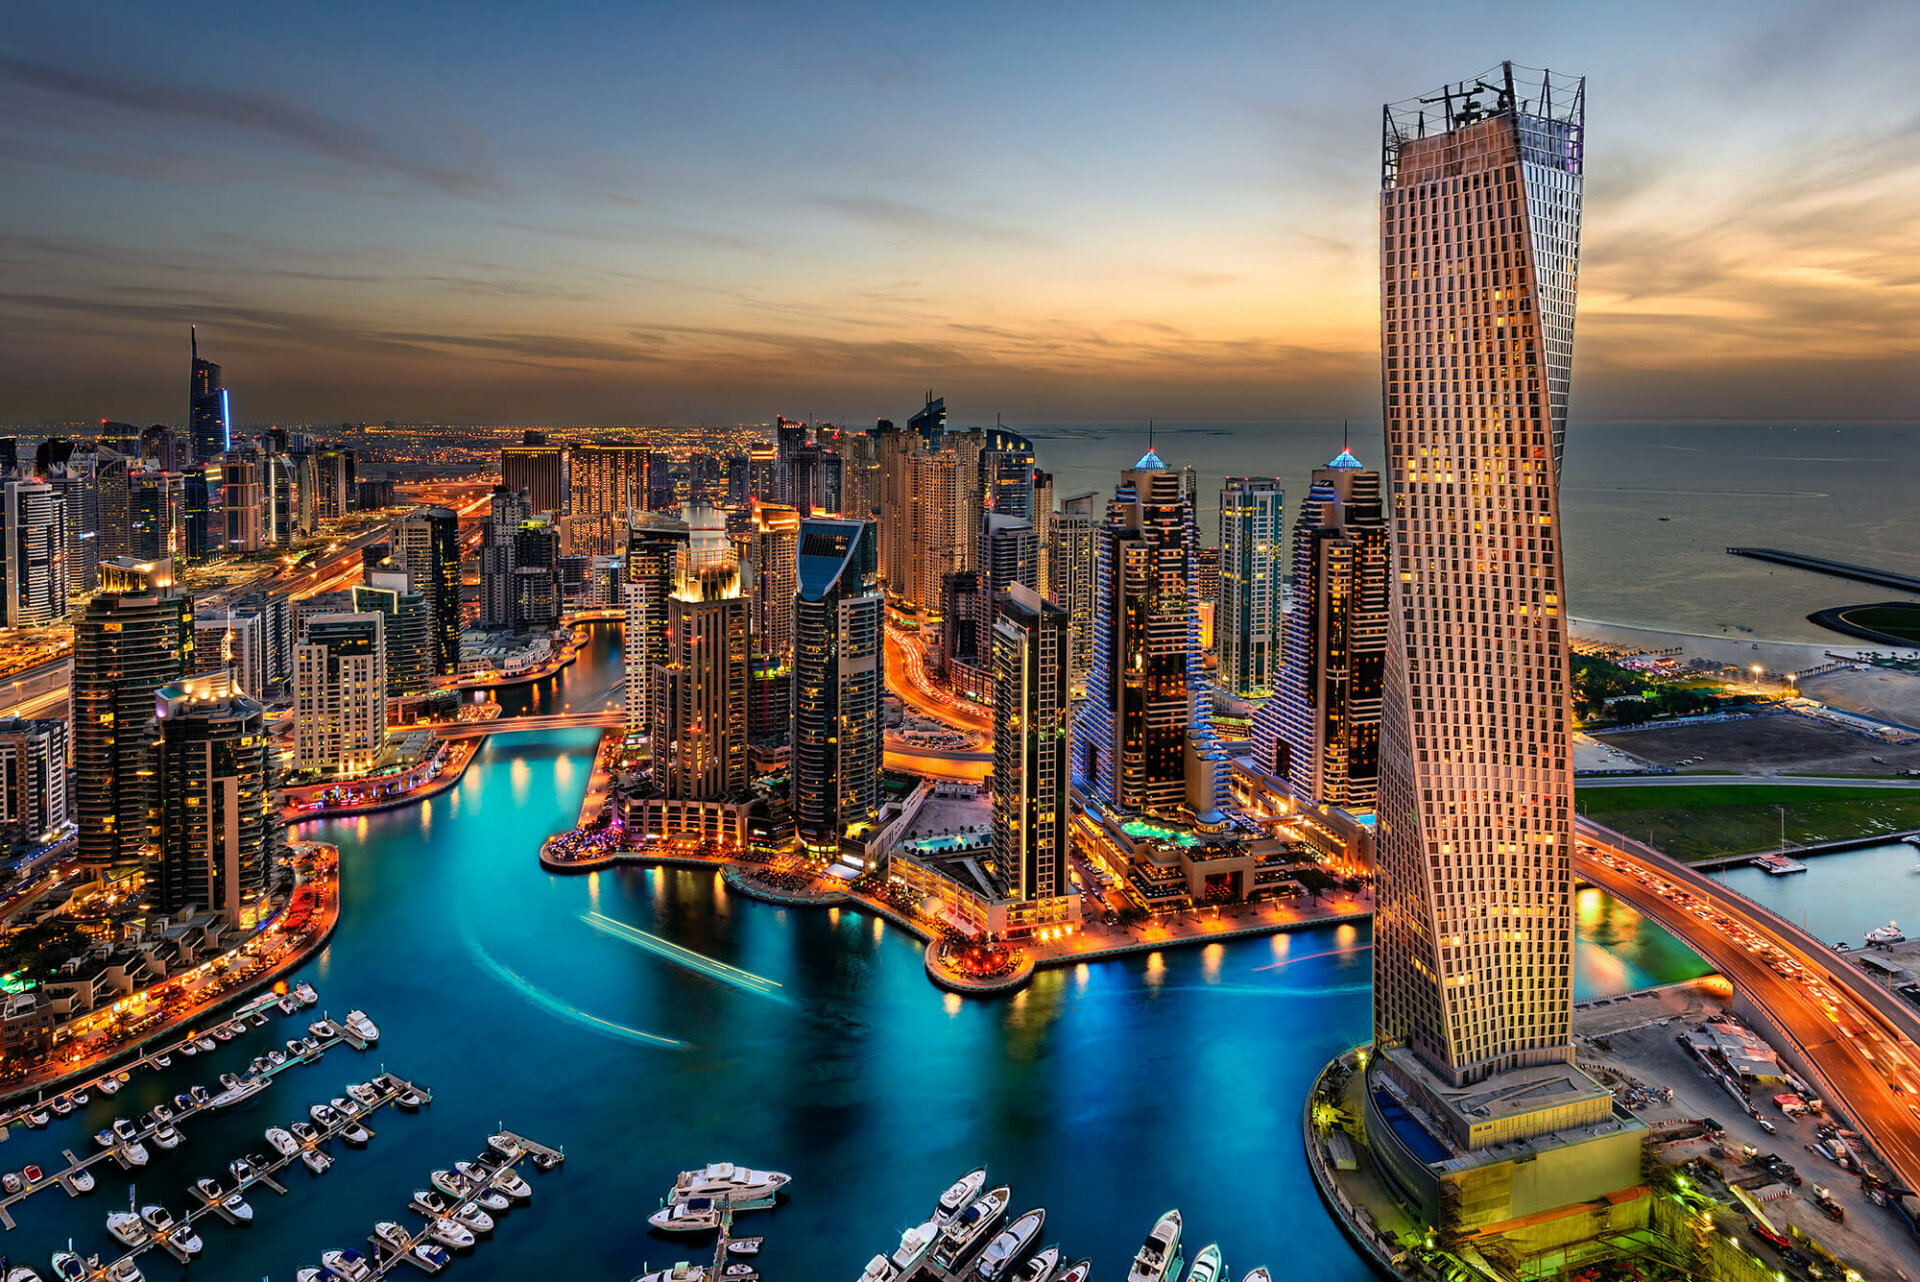 El distrito del puerto deportivo de Dubai